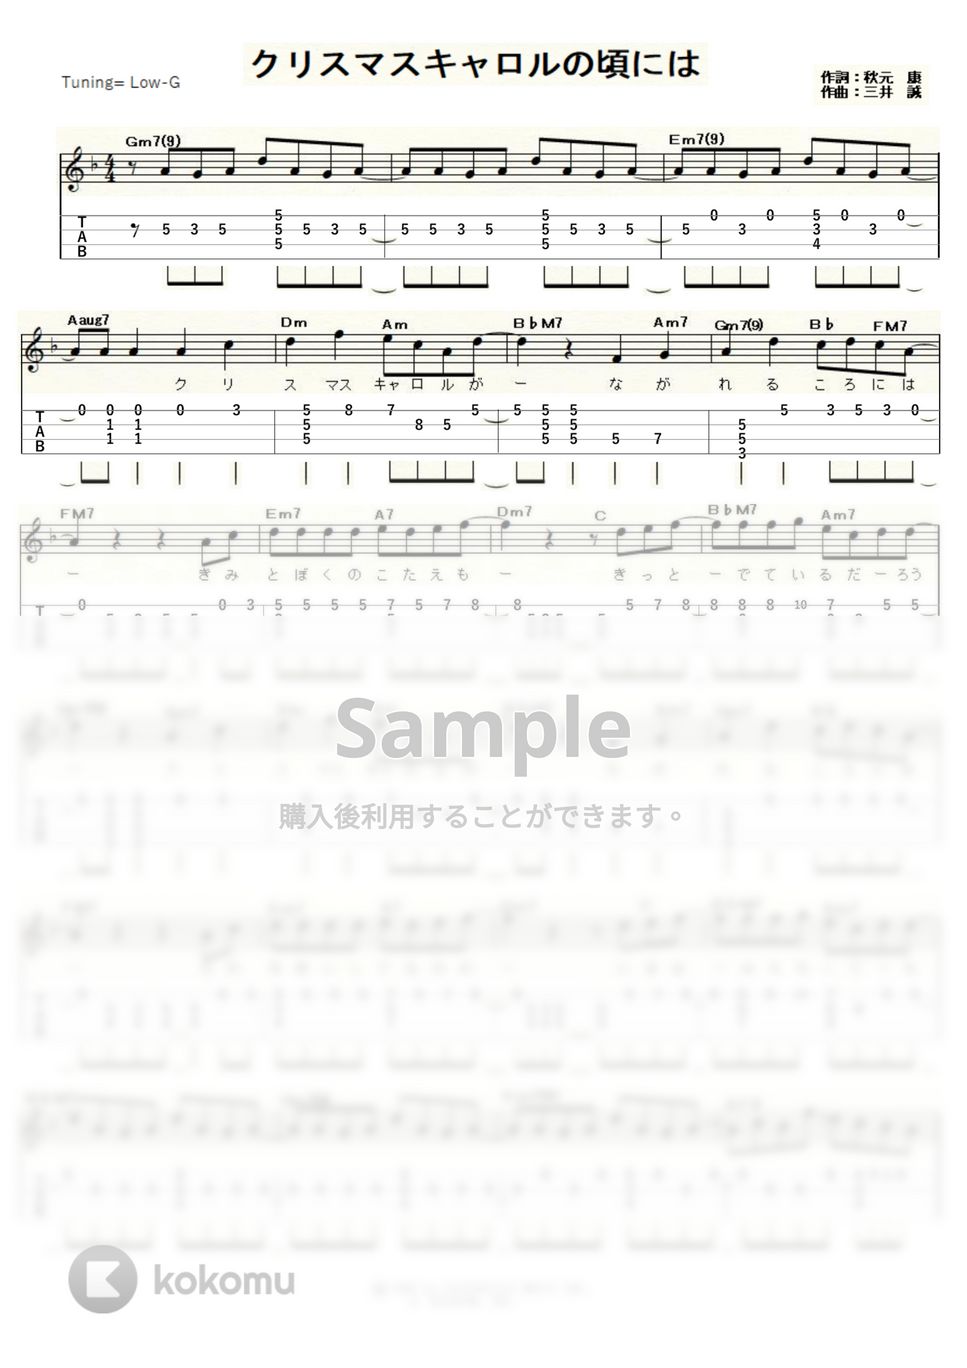 稲垣潤一 - クリスマスキャロルの頃には (ｳｸﾚﾚｿﾛ/Low-G/中級) by ukulelepapa